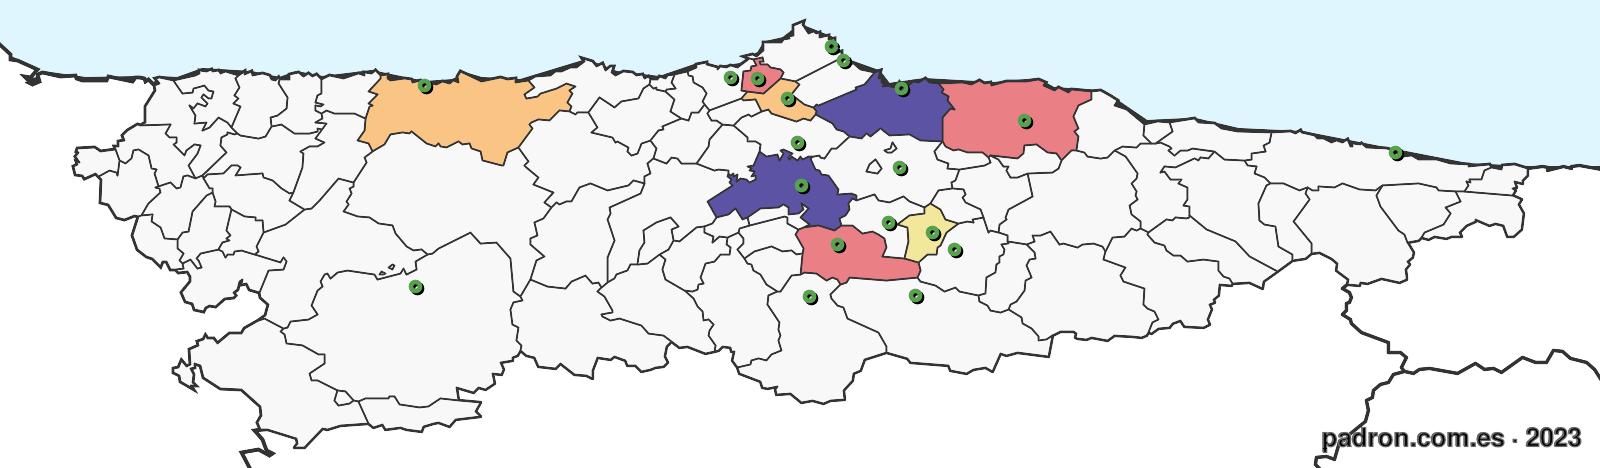 guineanos en asturias.